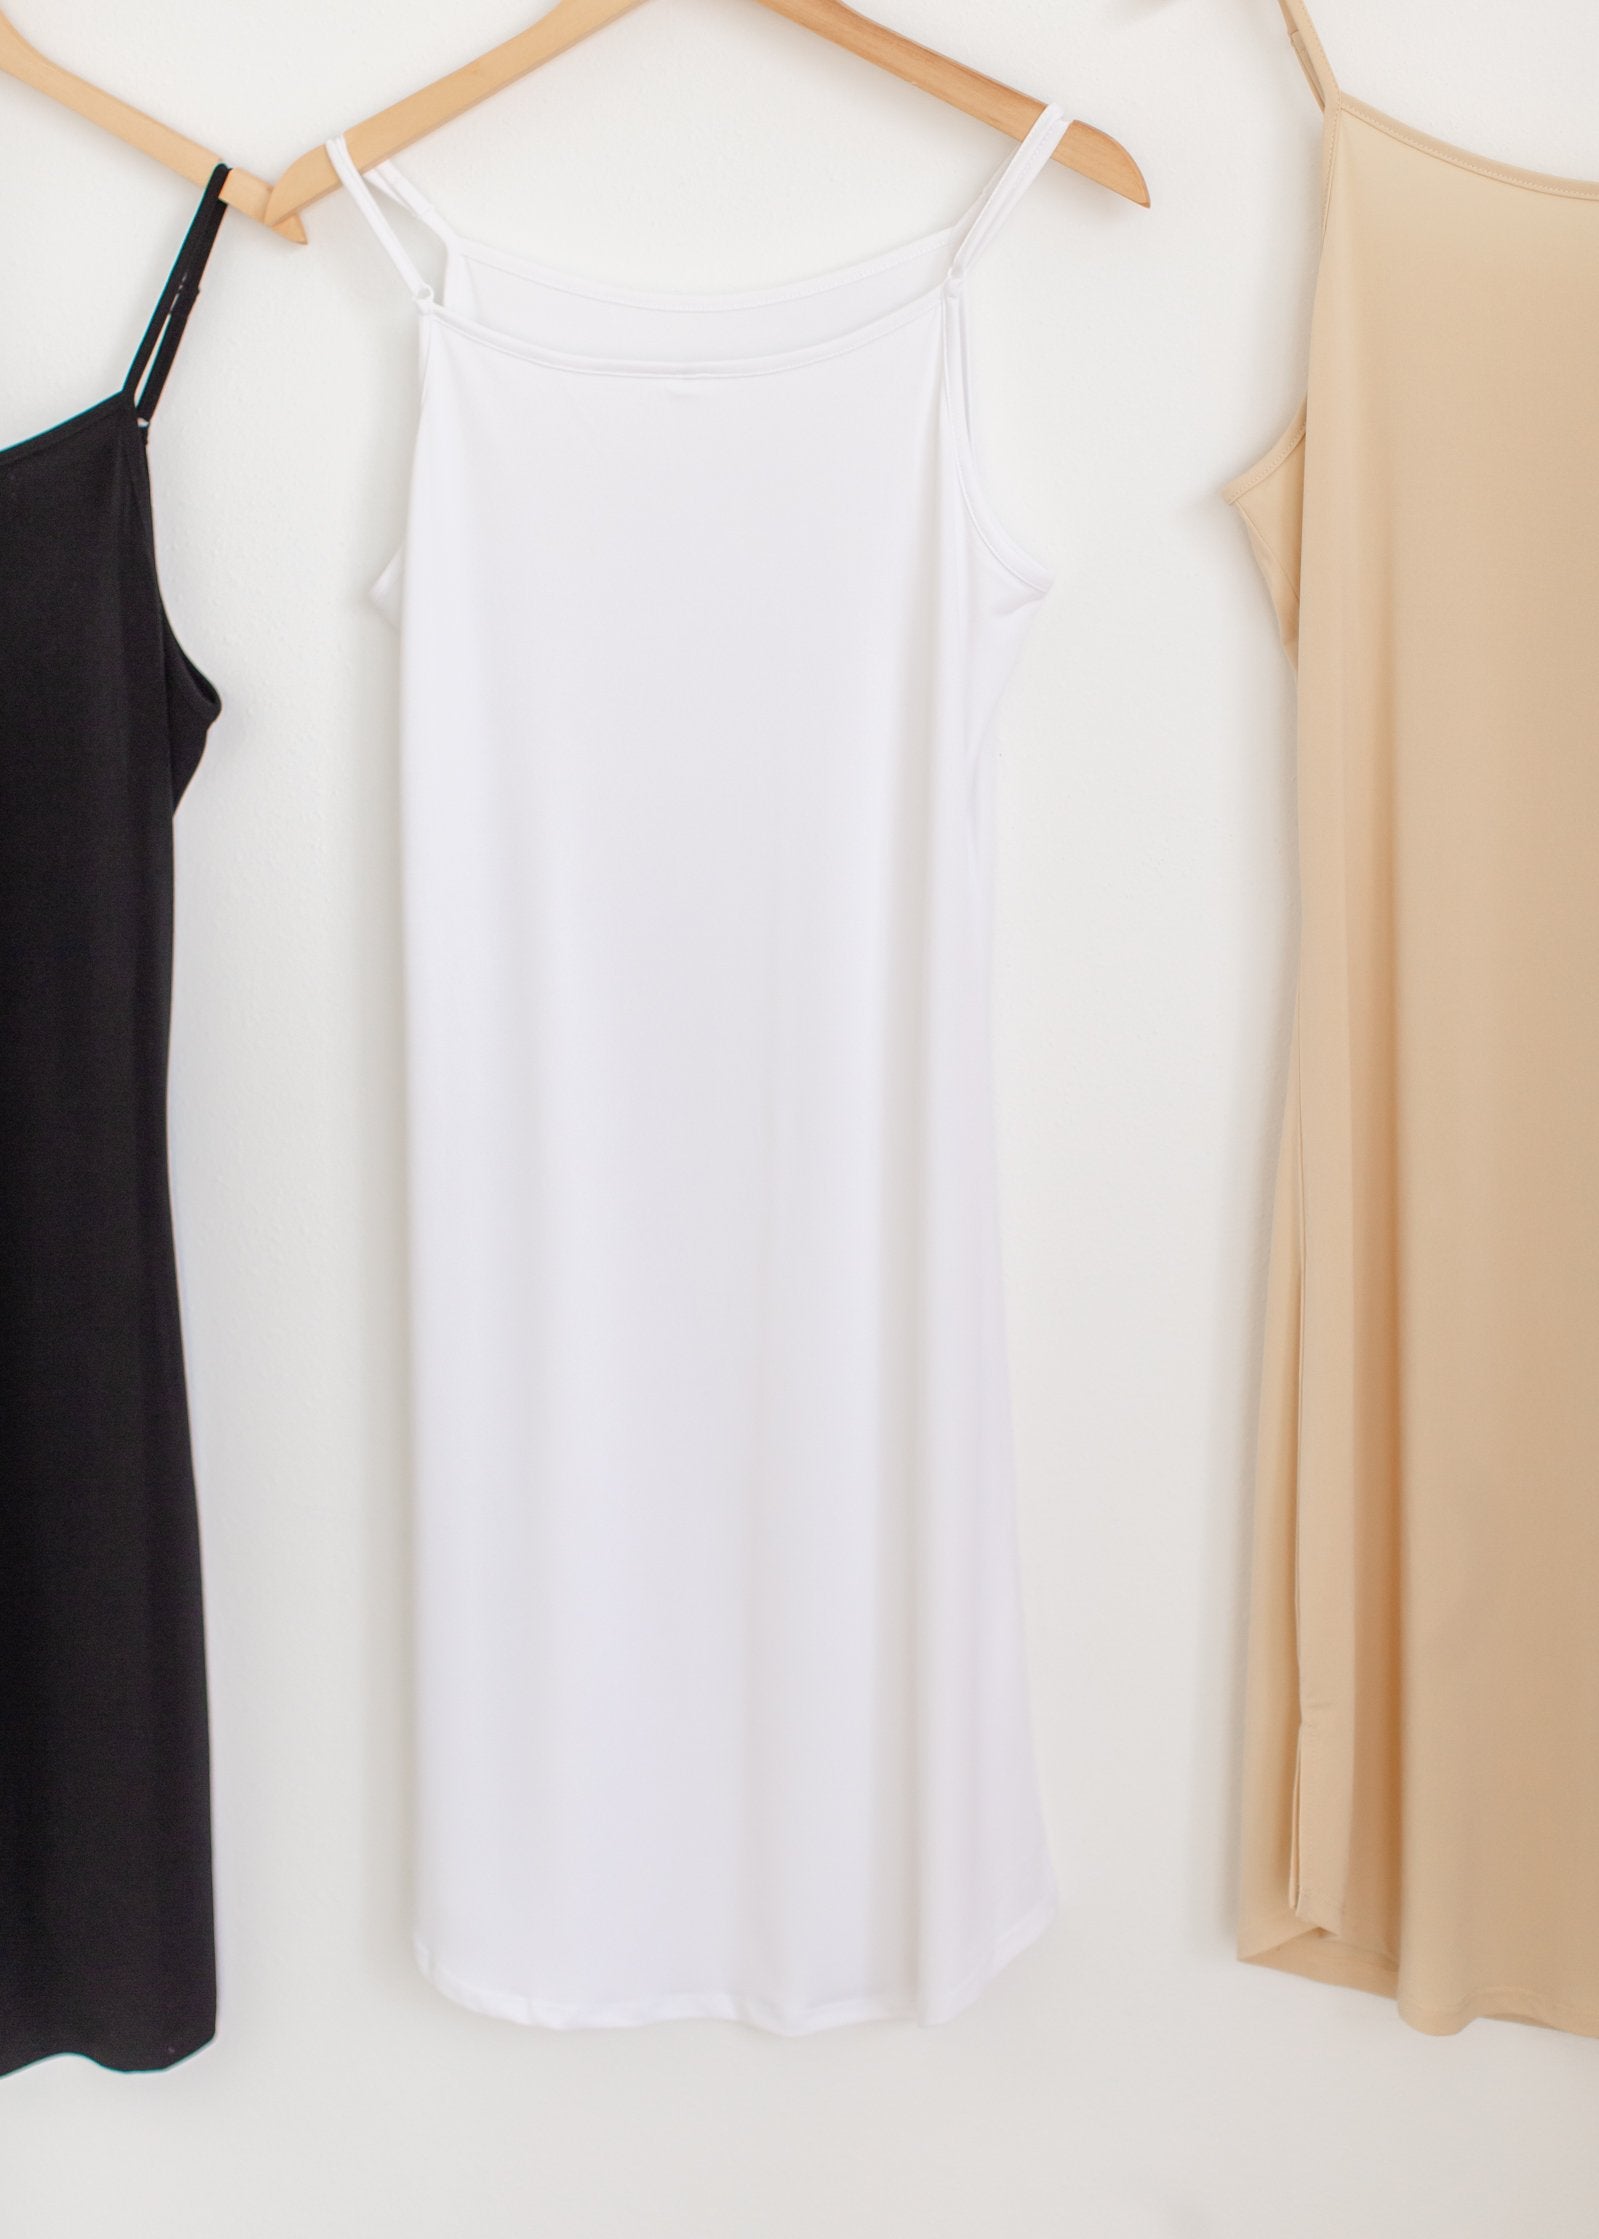 Adjustable Full Slip Dresses Inherit - SOP White / XS